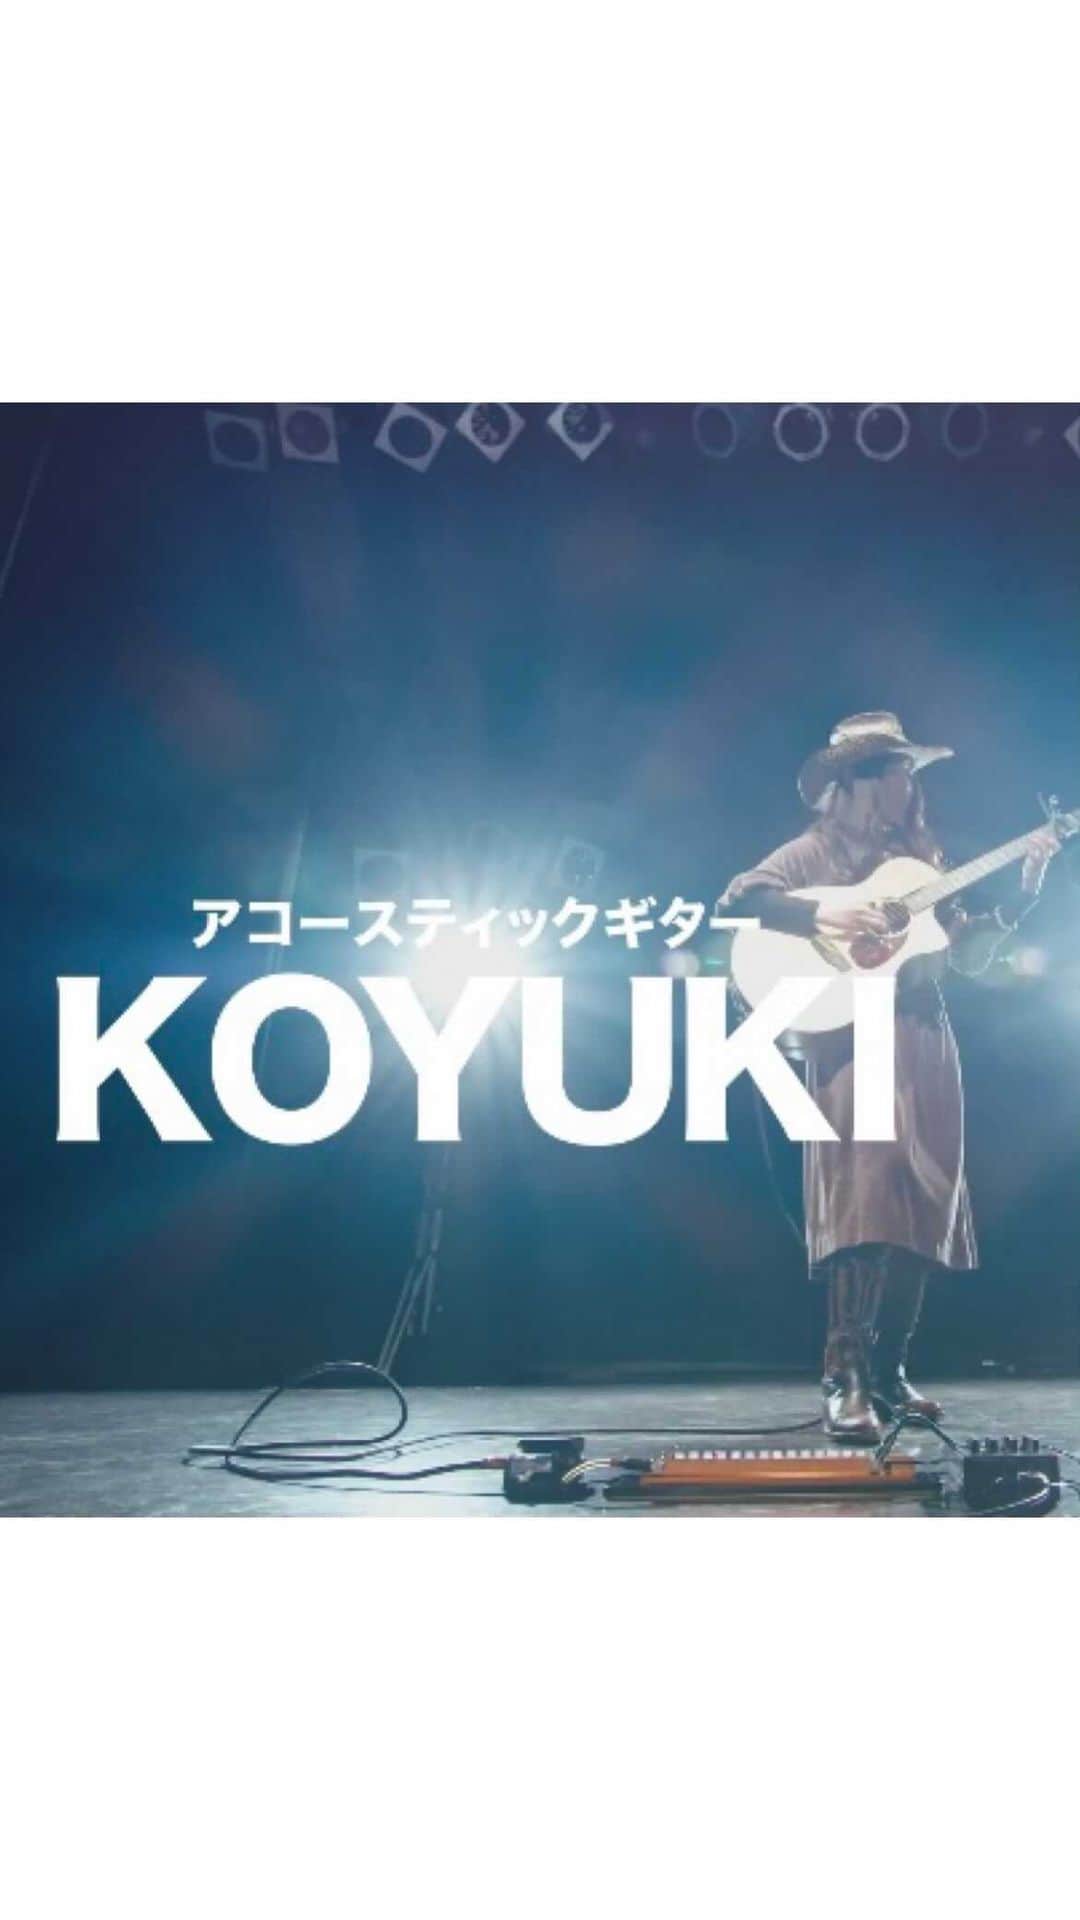 au公式Instagramアカウントのインスタグラム：「#ハタチが未来をつなぐぞ 🤝  💐ハタチの可能性 vol.17 アコースティックギター「KOYUKI」 💐  @610koyuki   10歳からギターを始め、僅か10ヶ月後の2013年1月、Morrisフィンガーピッキングデイ西日本予選大会にてMIKI GAKKI賞を受賞。2年後の同大会コンテスト部門で優秀賞、全国決勝大会でも入賞。いずれも史上最年少で受賞。 カントリー奏法、ギャロッピング、高速アルペジオなど、繊細且つ情熱的な演奏を得意とするフィンガースタイル・ギタリスト。  ------  #ハタチが未来をつなぐぞ とは！ 2022年に新成人を迎えるパフォーマー20名と「ずっと、もっと、つなぐぞ。au」がコラボ！ 5Gサービスとパフォーマーの可能性、そして未来を表現した動画を公開していきます🥳  ------  - KOYUKI - アコースティックギター1本で、伴奏・パーカッション・メロディーを同時に演奏するソロギターというジャンルの素晴らしさや魅力を、日本でもっと広げていきたいと思い、活動をしています。 「人生にリハーサルは無い」という大好きなギタリストであるTommy Emmanuel に教わった言葉に背中を押され、今を大切に生きています。私のギターを人々の生活の中で少しでも必要としていただけるような、そんなギタリストとして活躍できればうれしいです。  ------  #ハタチが未来をつなぐぞ  #ずっともっとつなぐぞau   #未来 #つなぐ #ハタチ #新成人 #アコースティックギター ＃ギタリスト #KOYUKI #acousticguitar#guitar #future #au #kddi #5g #au5g」